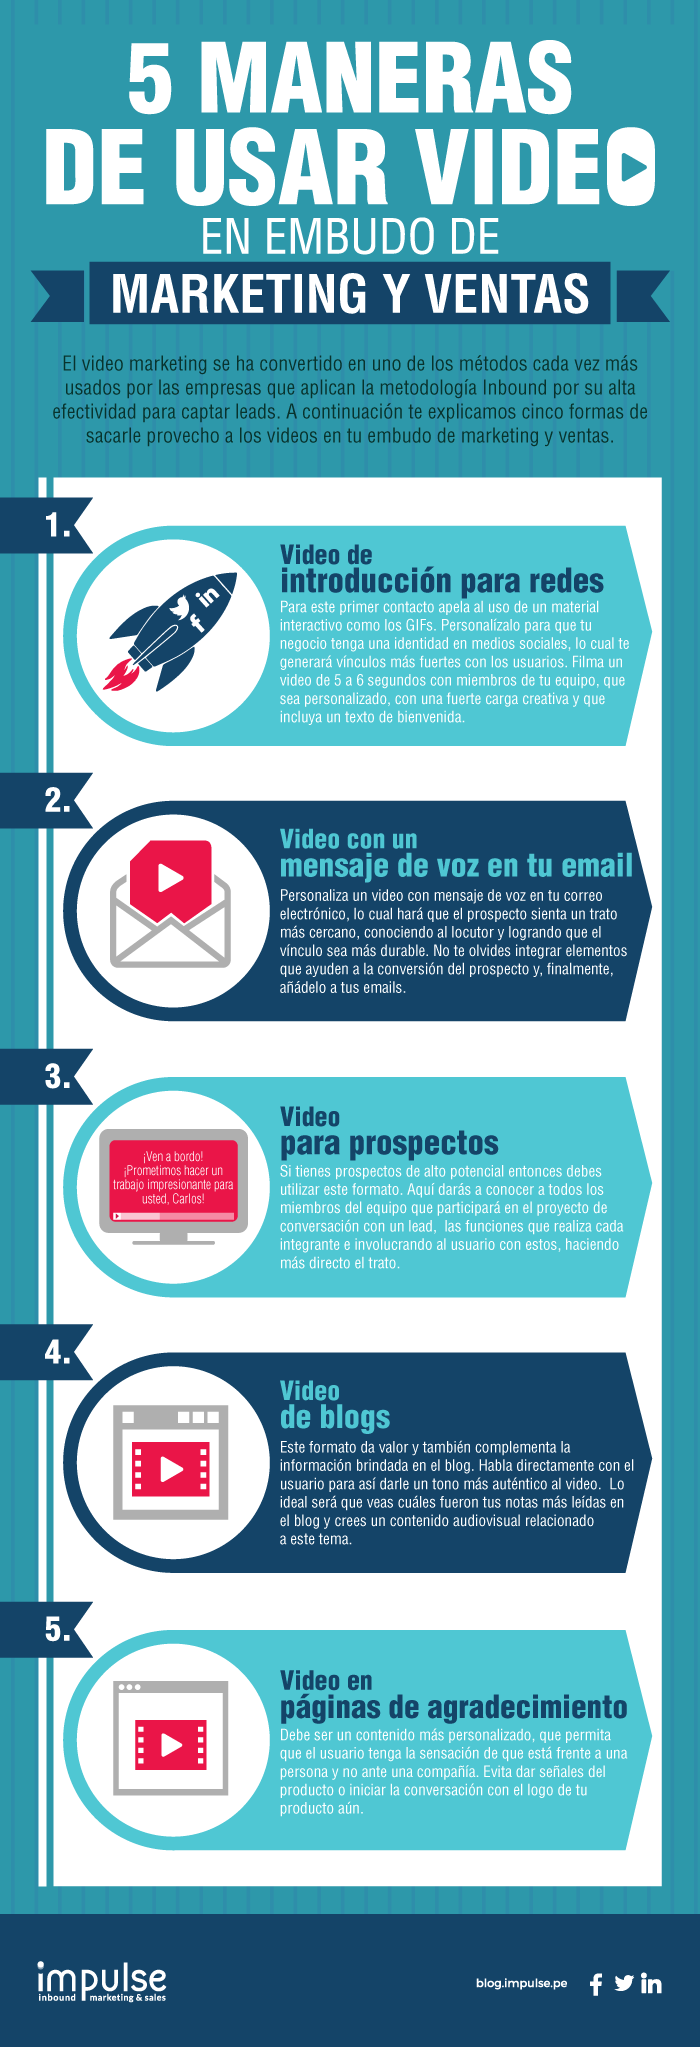 infografia-5-maneras-usar-video-en-embudo-marketing-ventas.png